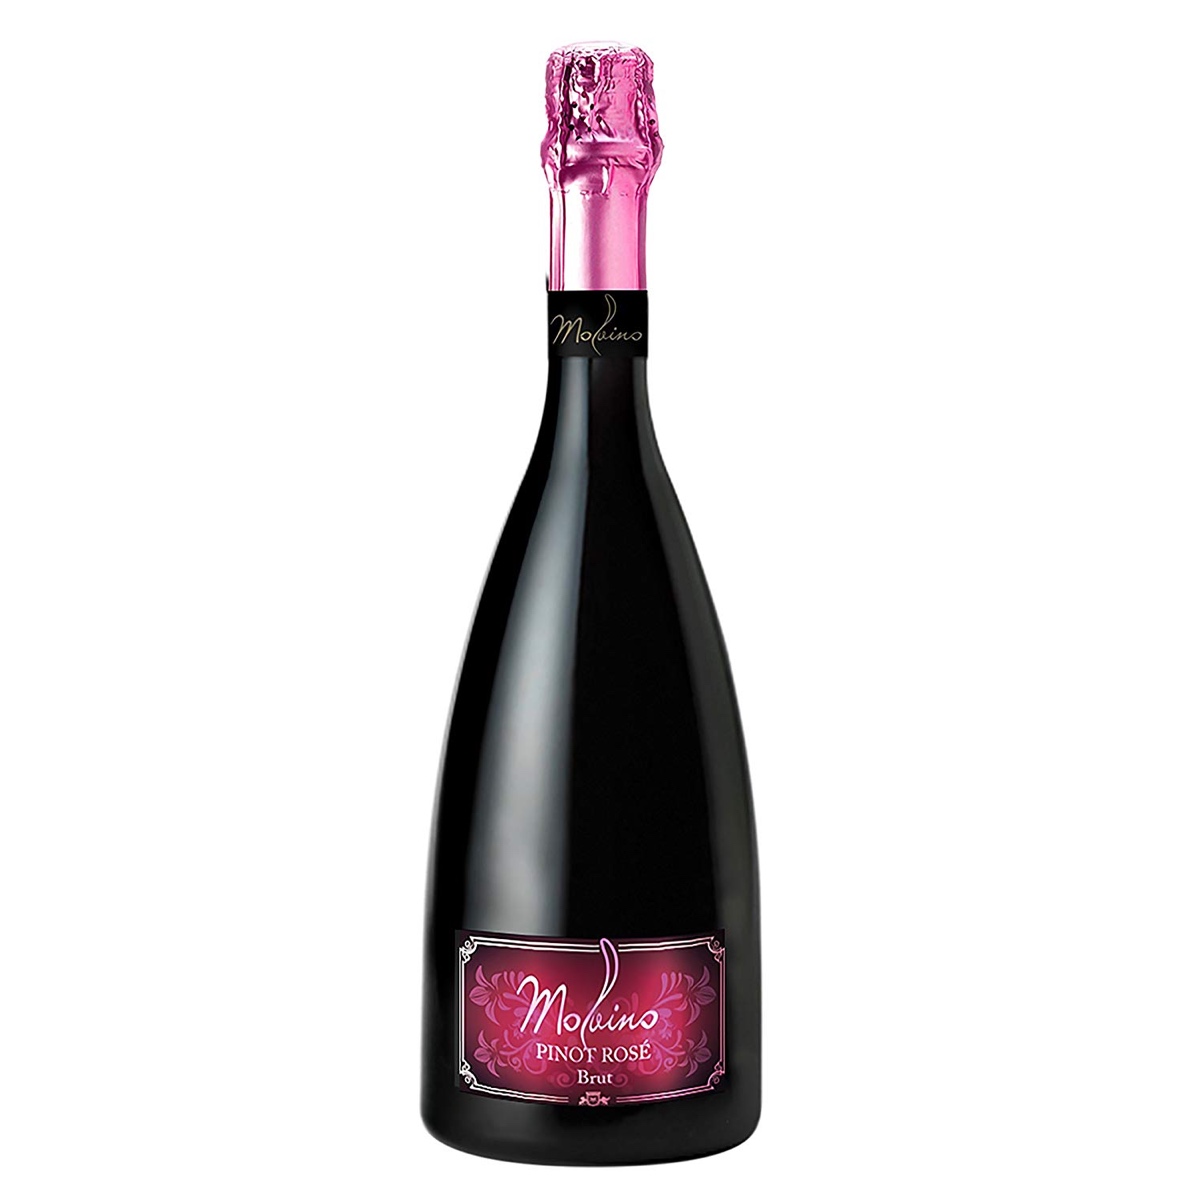 Rose Spumante Pinot Noir es un espumoso color rosa claro y cristalino